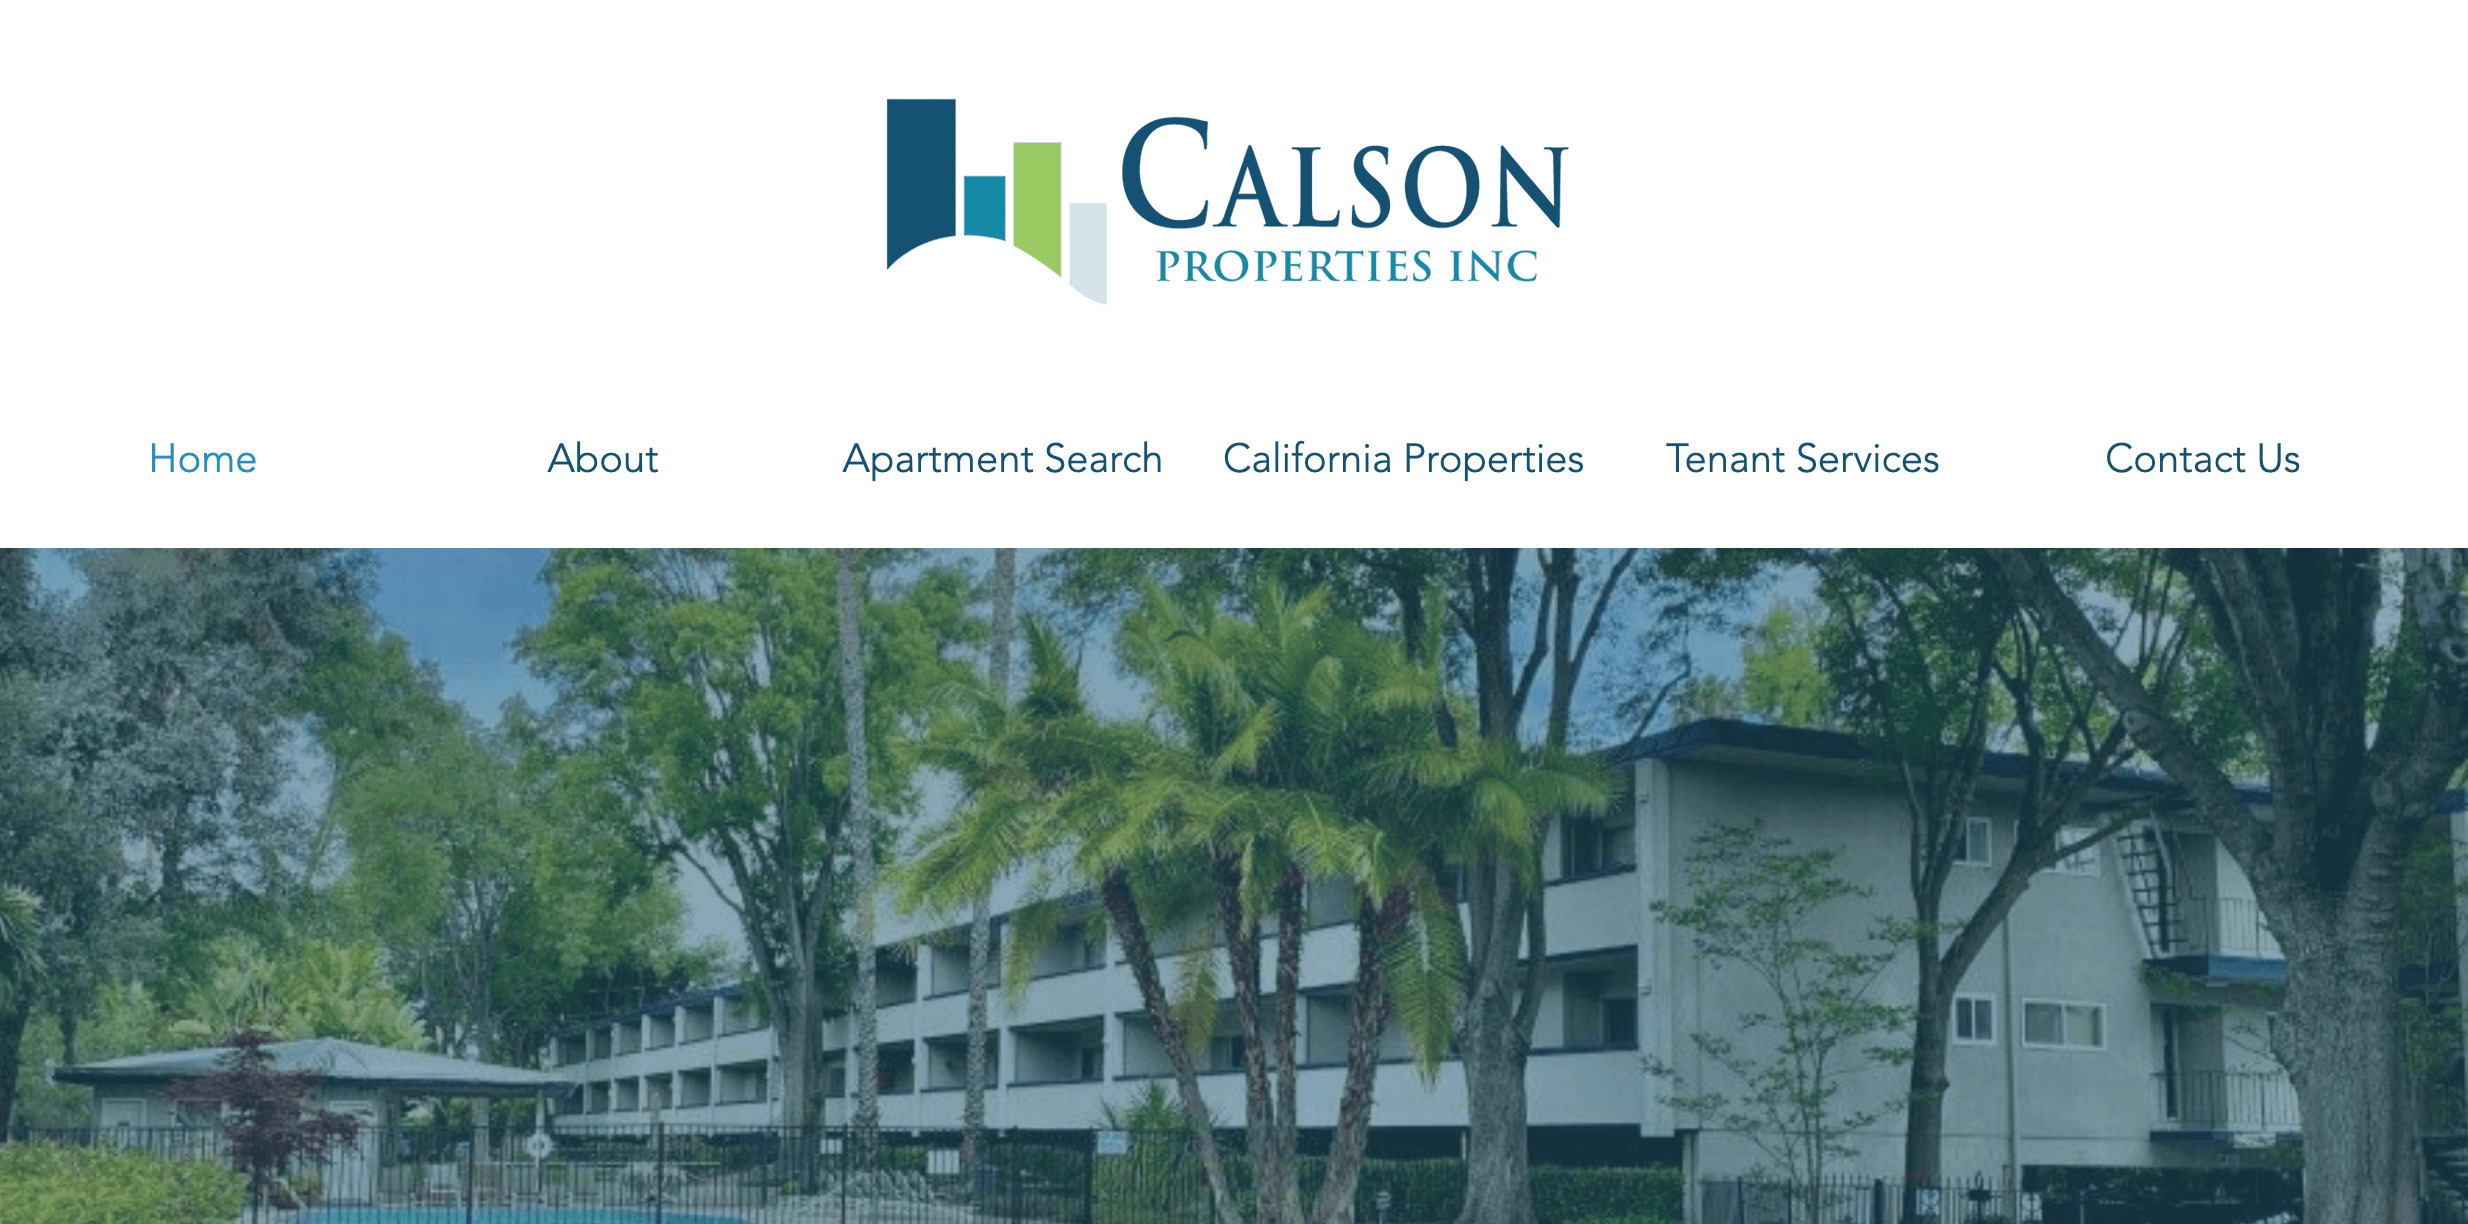 Calson Properties CRM Case Studies